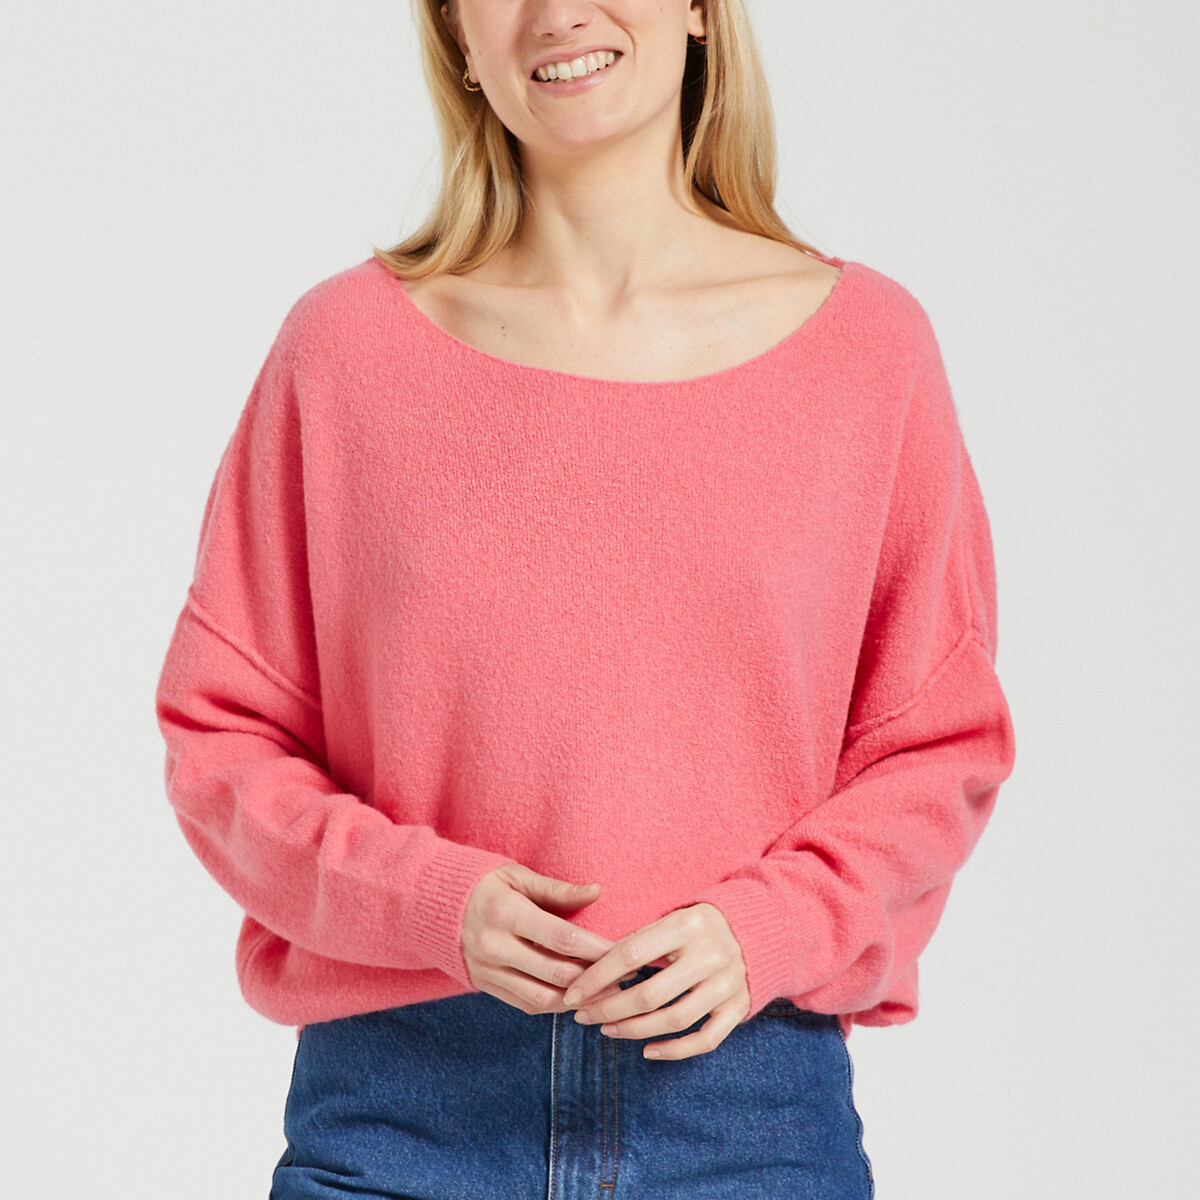 Пуловер с вырезом-лодочкой DAMSVILLE XS/S розовый пуловер с вырезом лодочка из смесовой шерсти wopy xs s бежевый